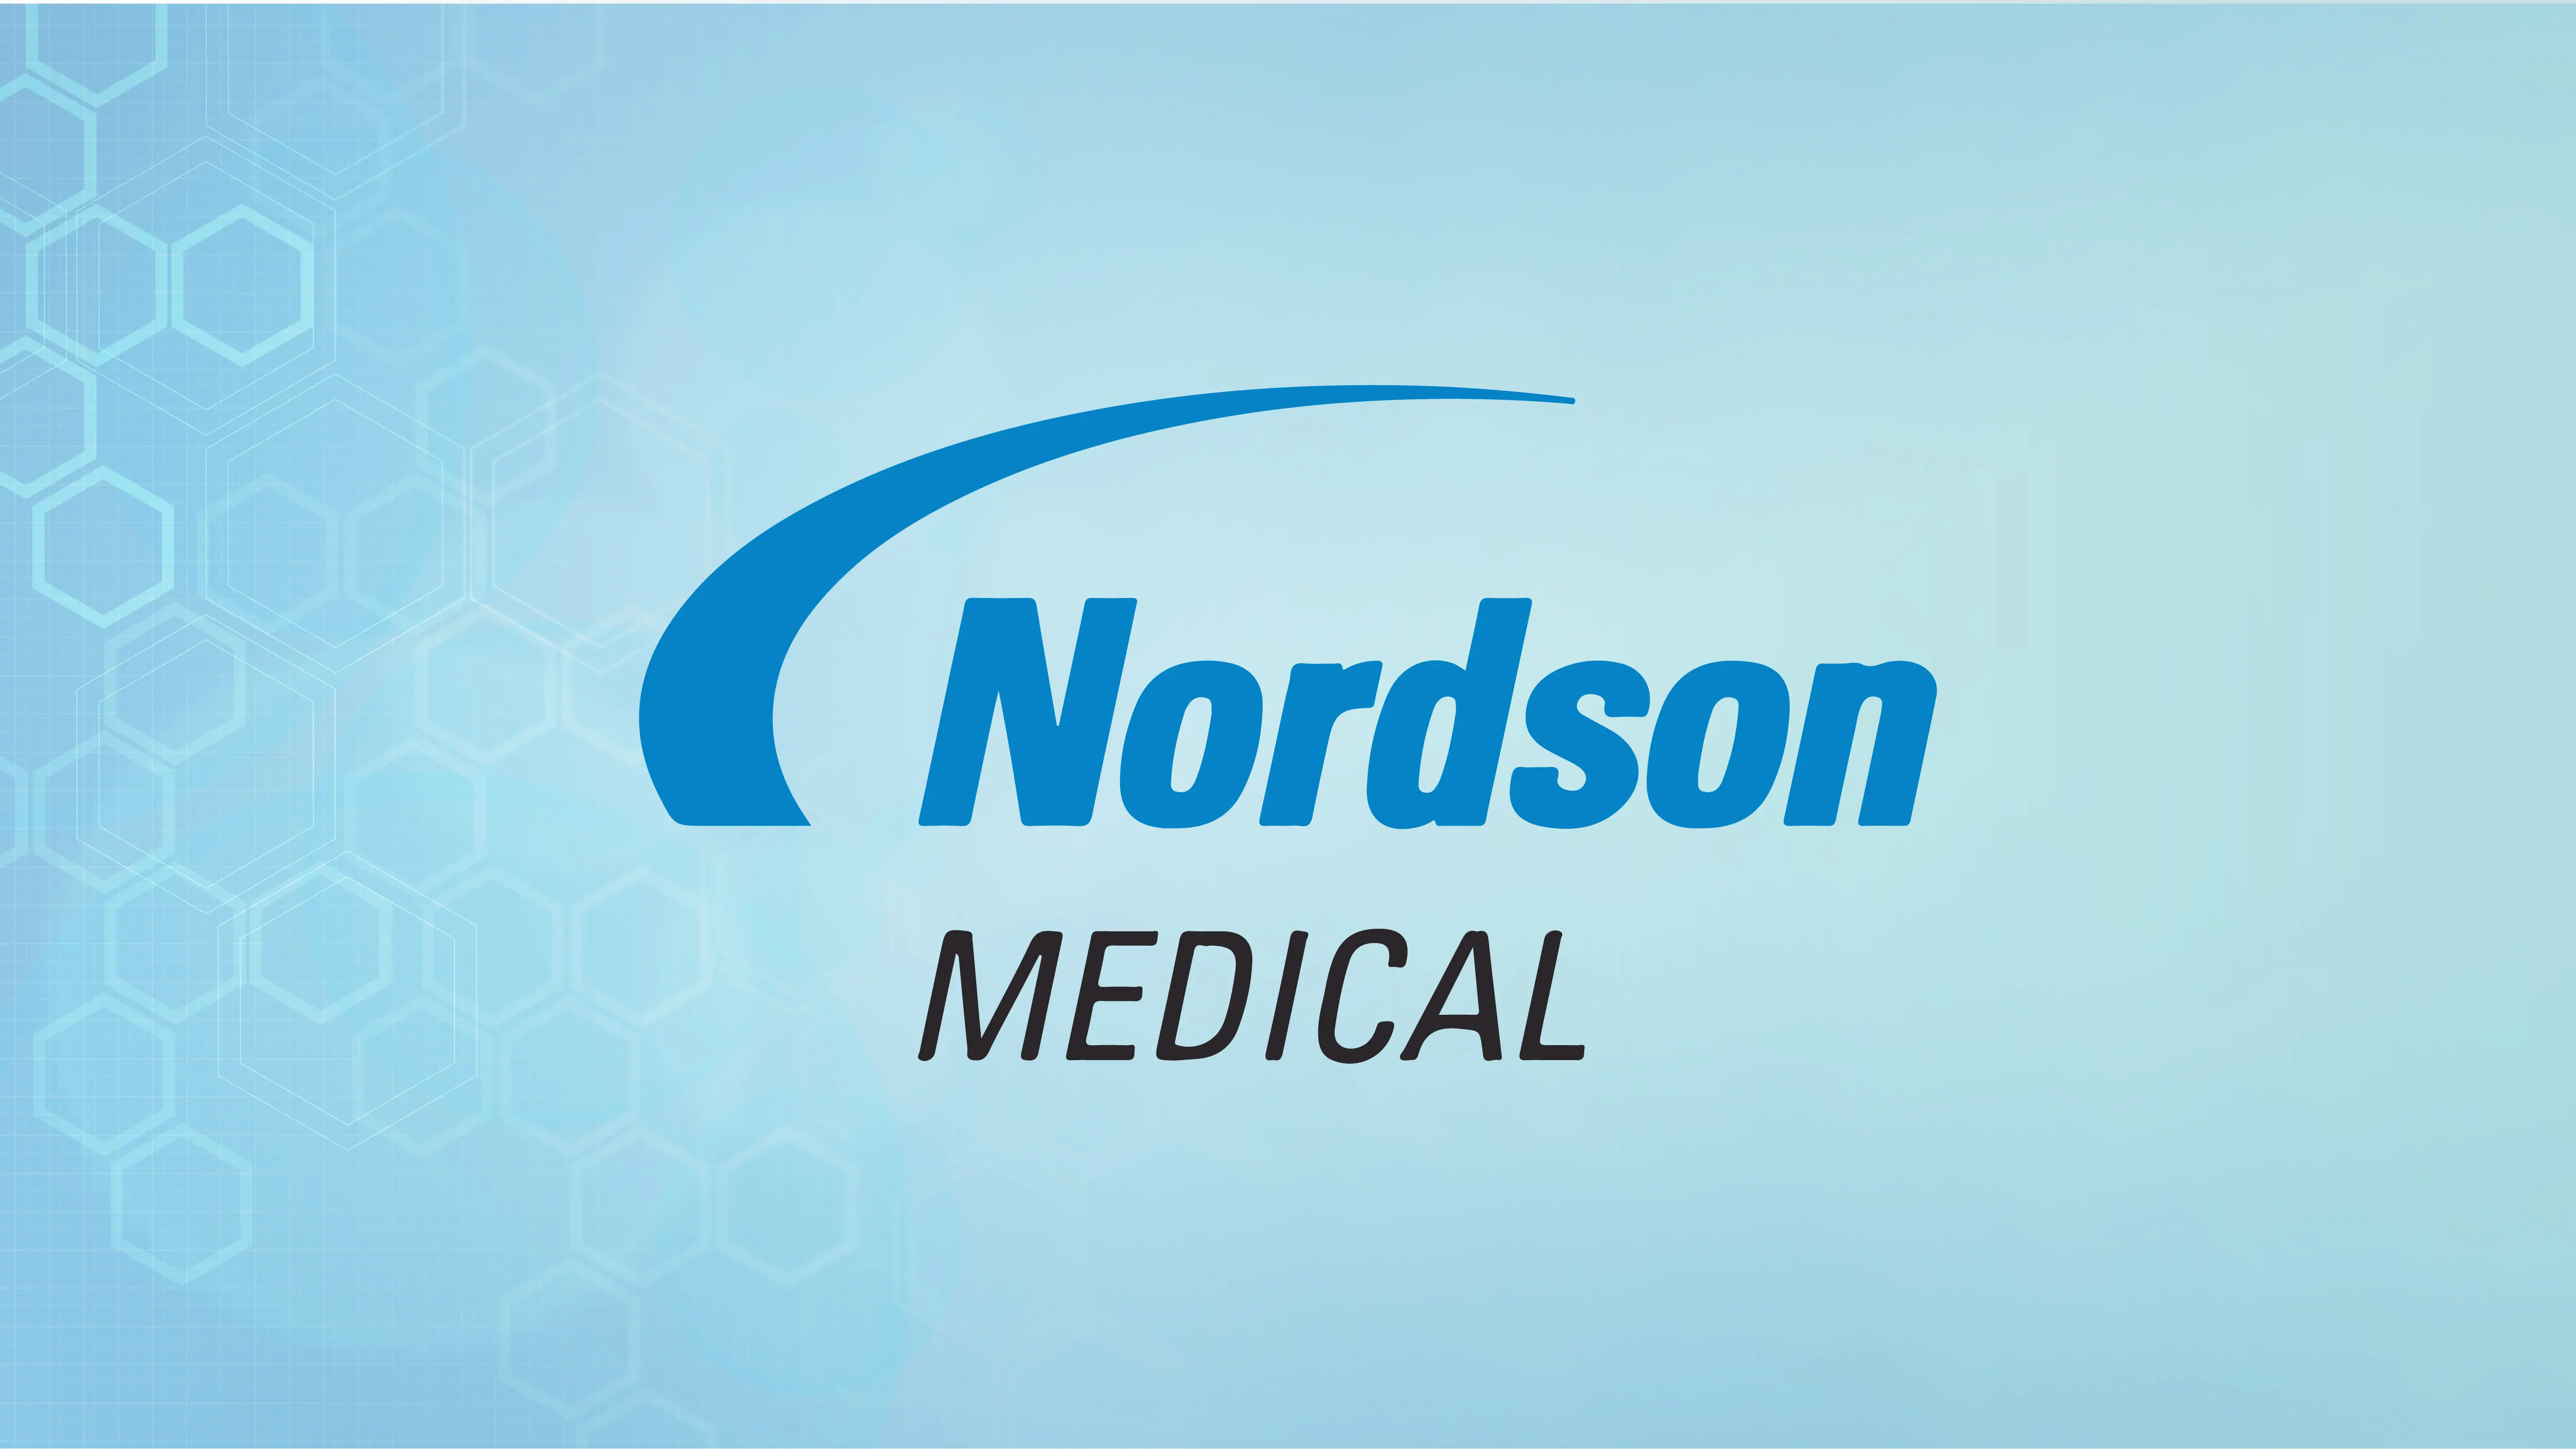 Nordson Medical